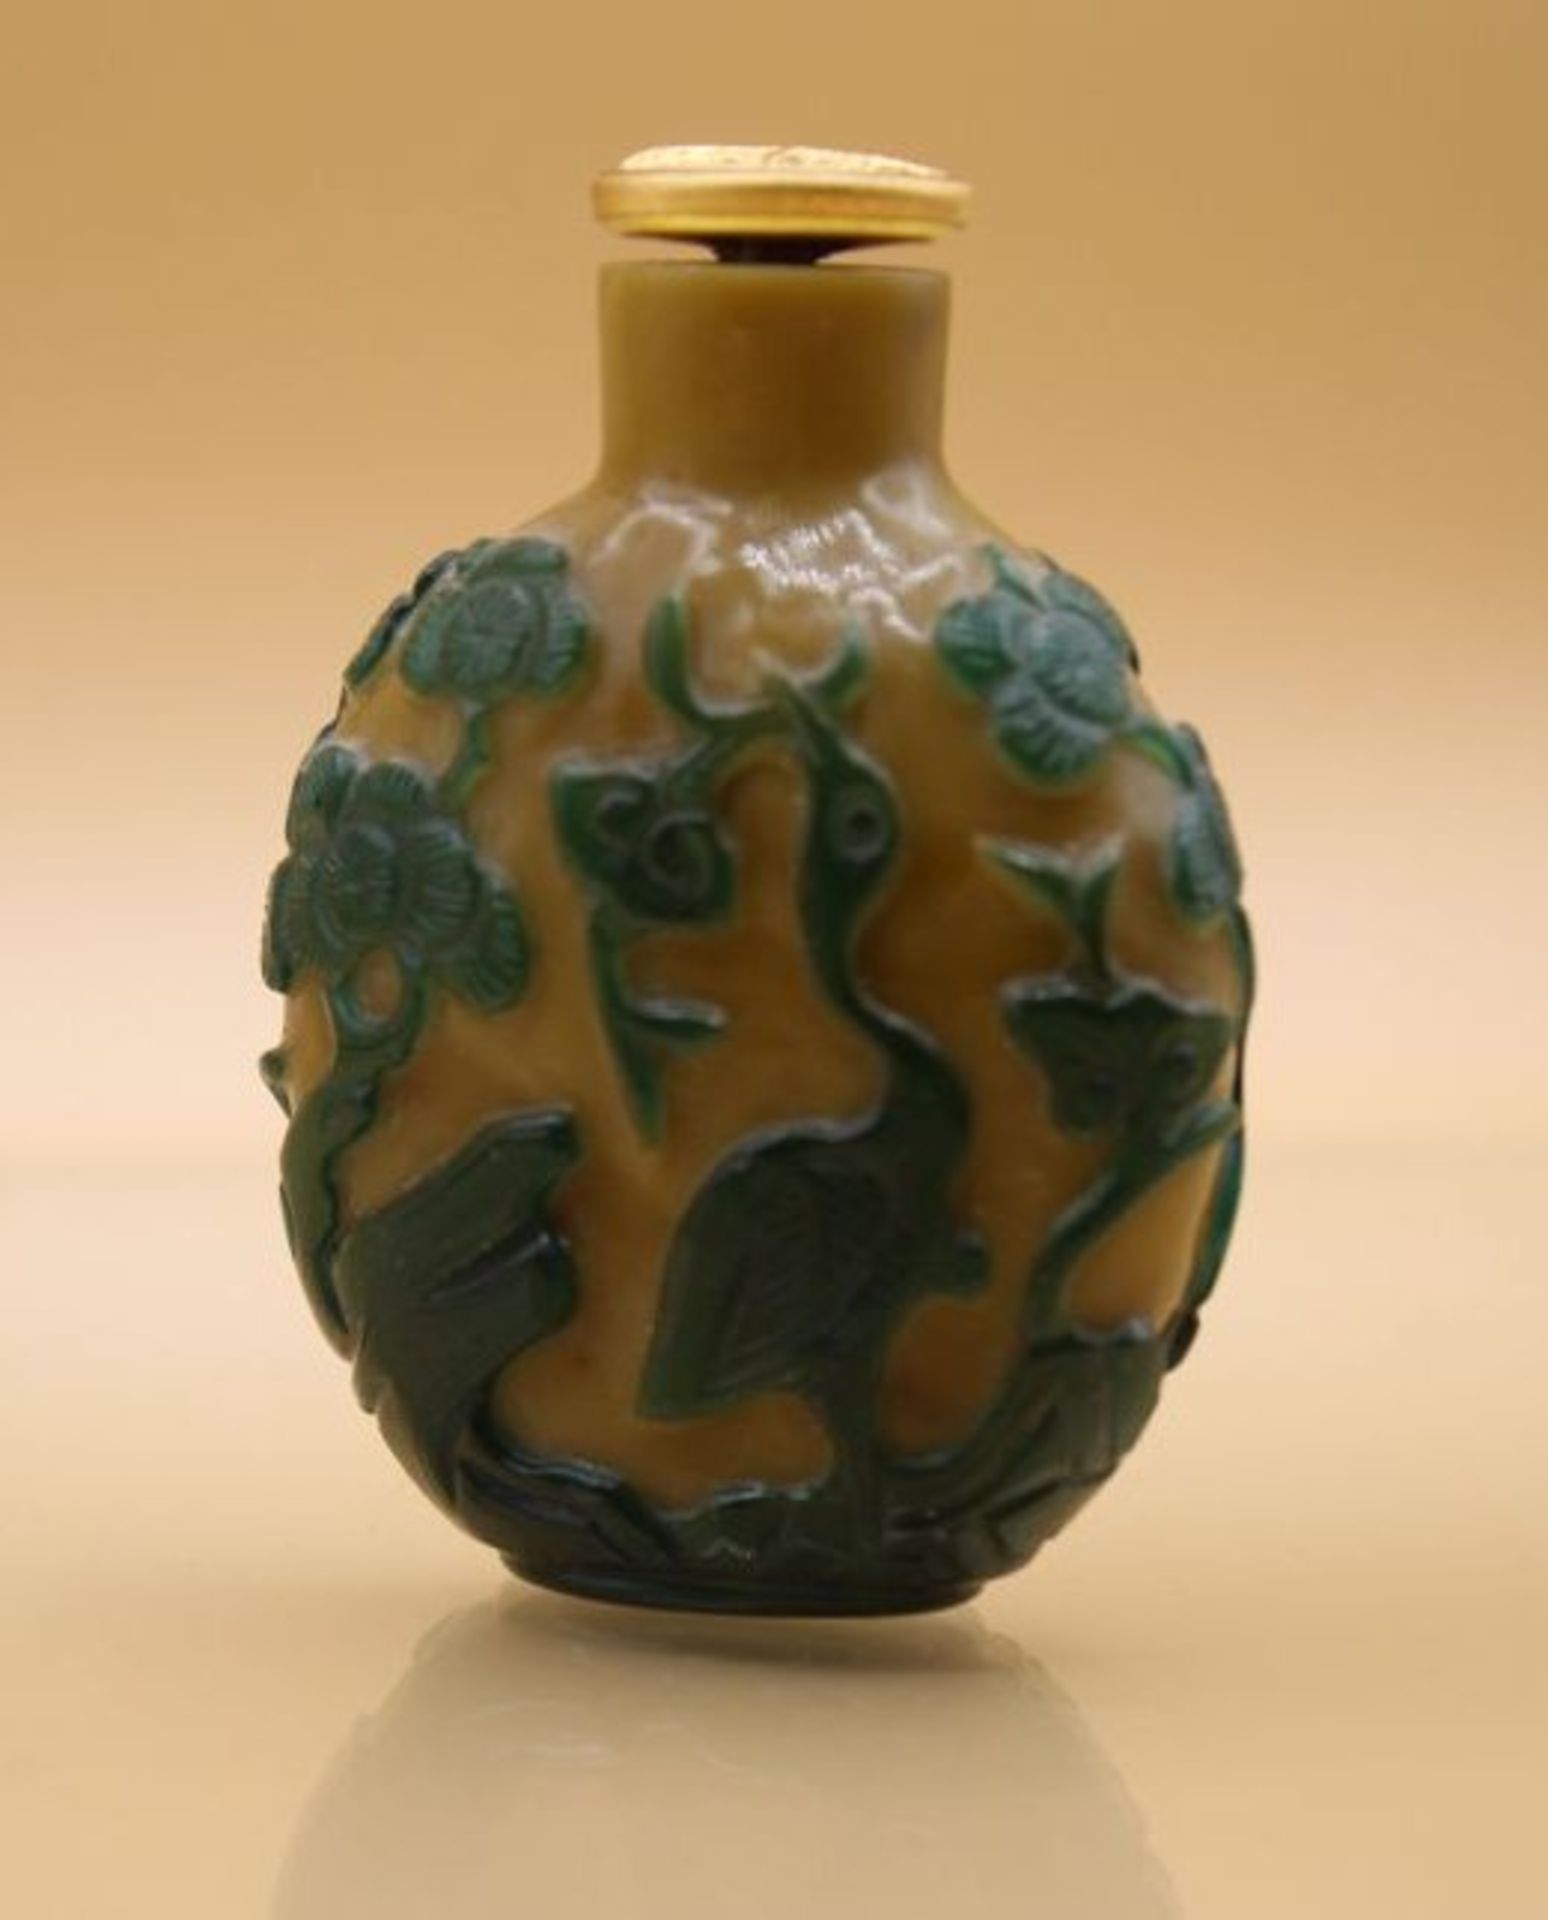 fein gearbeitete Snuff-Bottle, China, wohl 18./19. Jhd., geschnittene Tierdarstellungen, H-6cm.